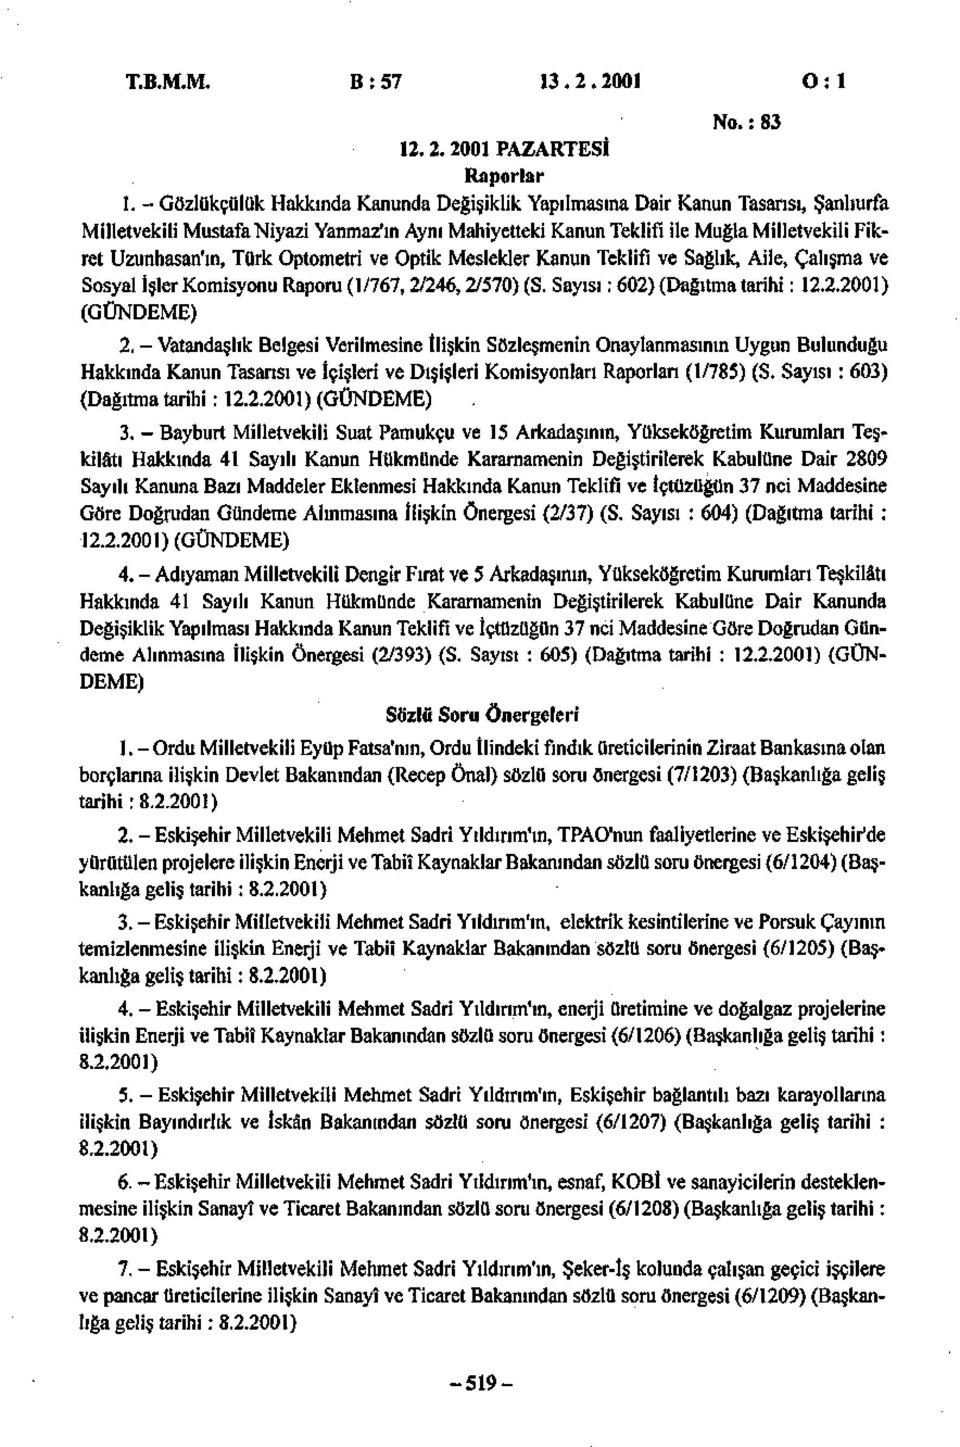 Türk Optometri ve Optik Meslekler Kanun Teklifi ve Sağlık, Aile, Çalışma ve Sosyal İşler Komisyonu Raporu (1/767, 2/246,2/570) (S. Sayısı: 602) (Dağıtma tarihi: 12.2.2001) (GÜNDEME) 2.